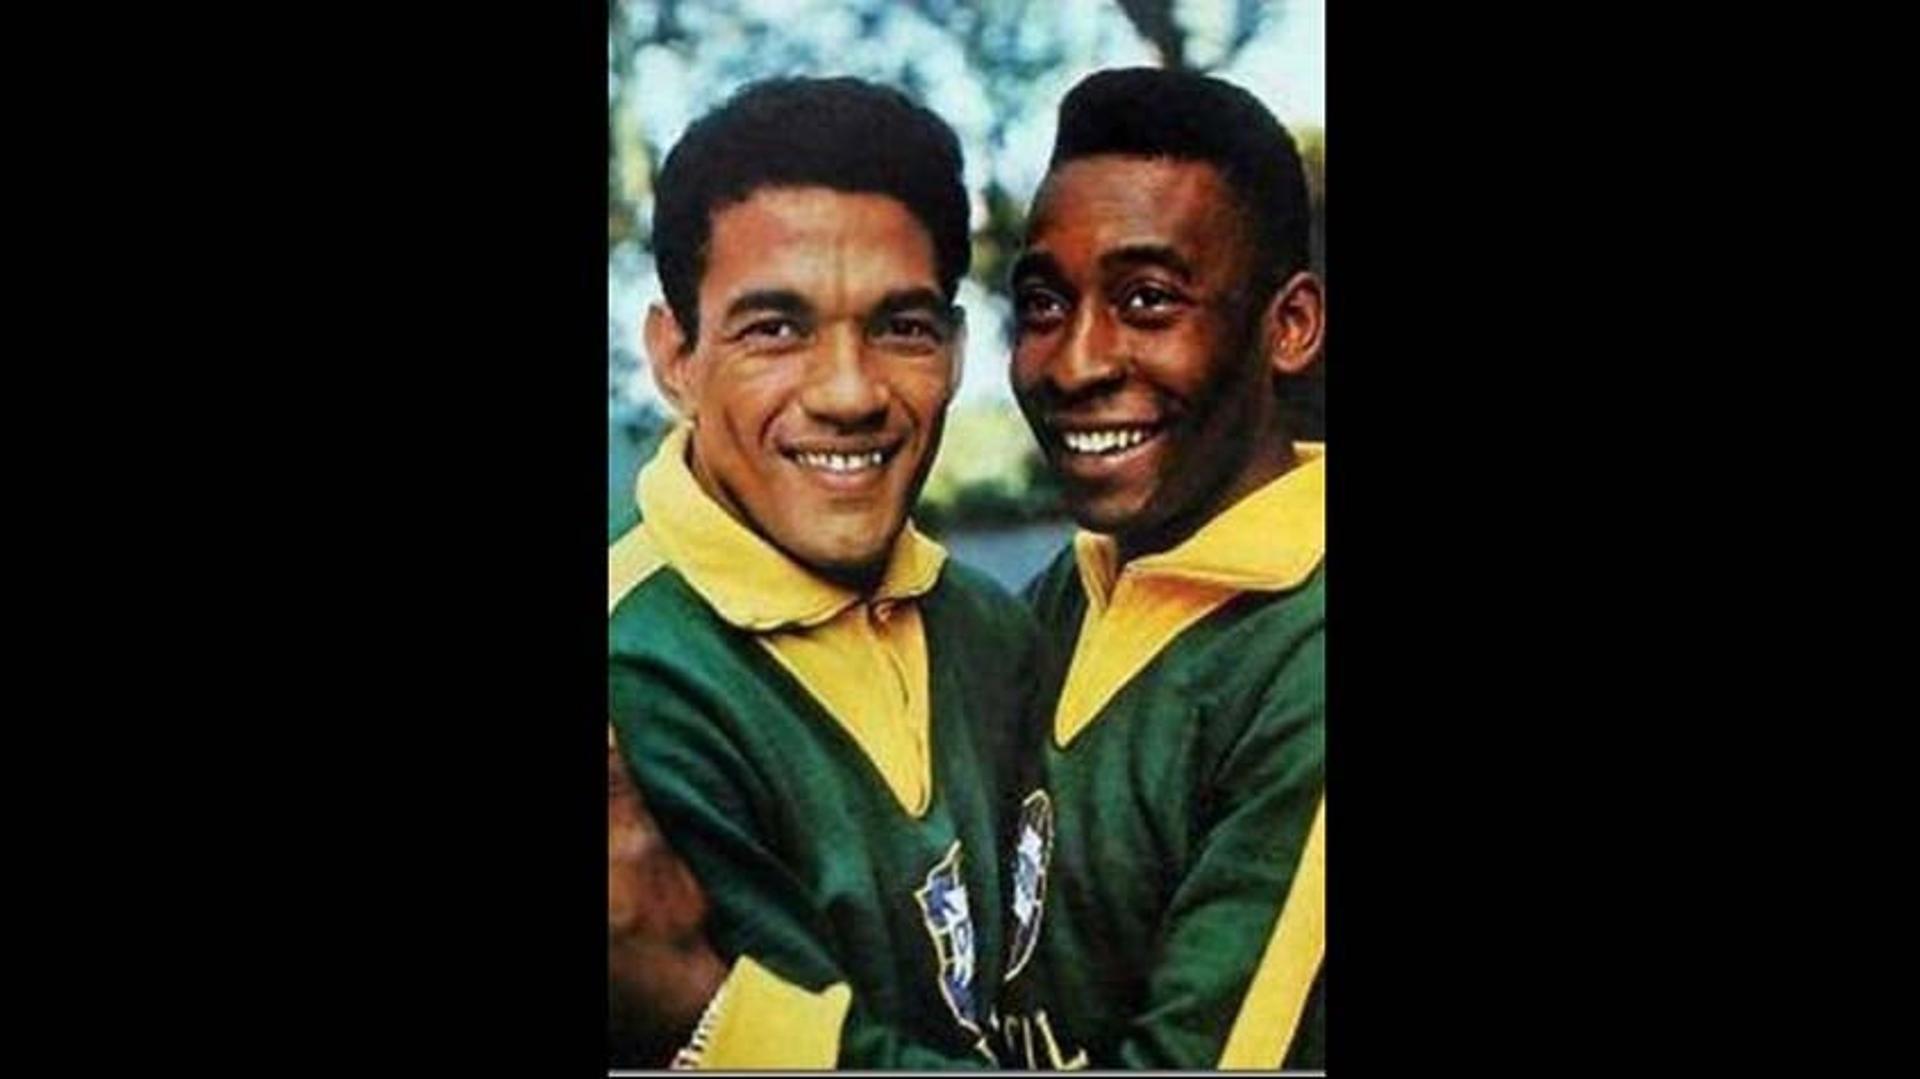 Garrincha e Pelé formaram uma das duplas mais importantes de toda a história do futebol. Juntos, ganharam duas Copas do Mundo.